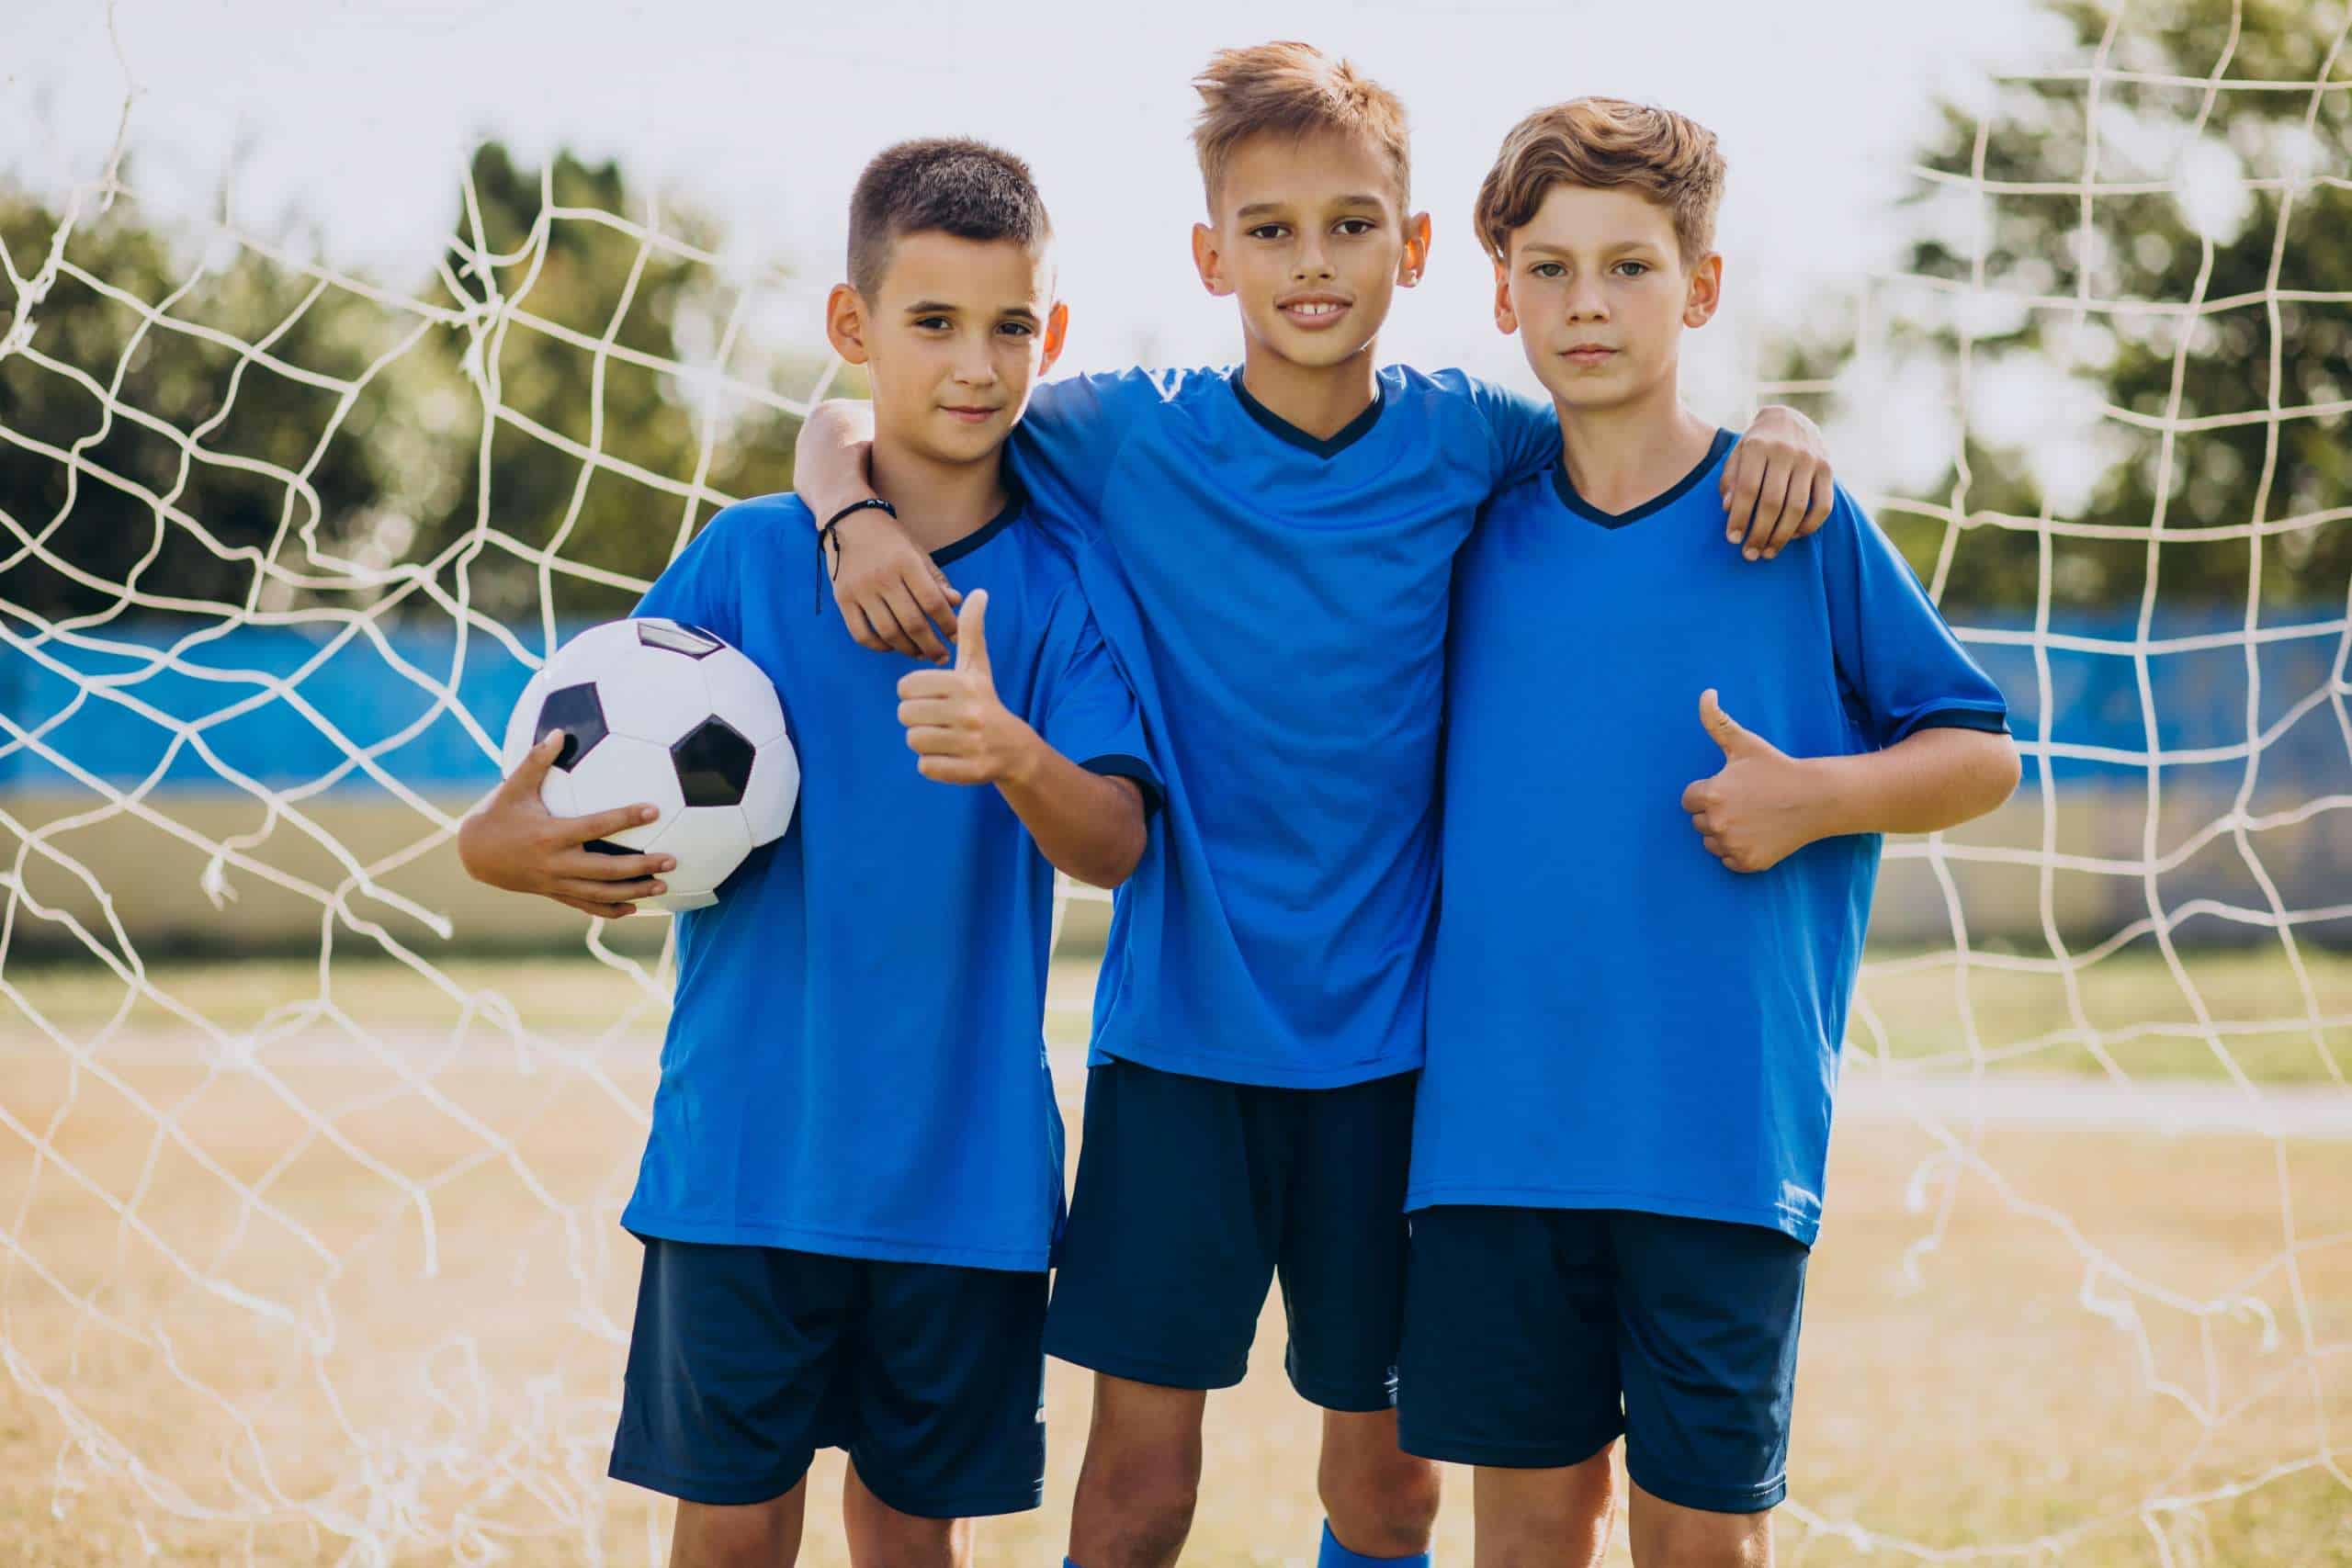 Stowarzyszenie PASS apeluje do rządu, aby odmrozić sport dla dzieci